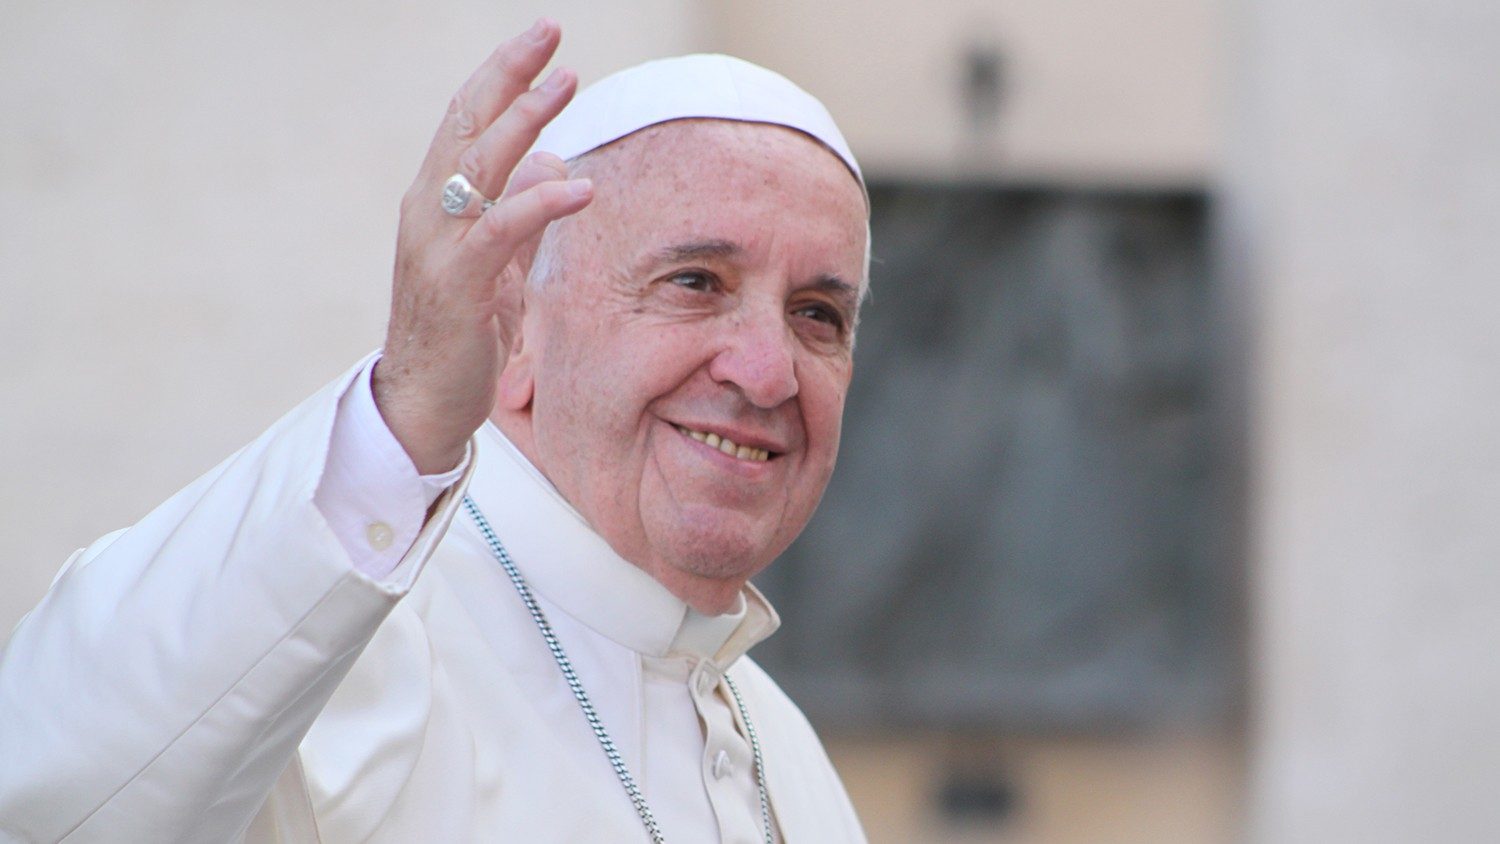 El Papa propone tres caminos hacia la paz dialogo, educación y trabajo